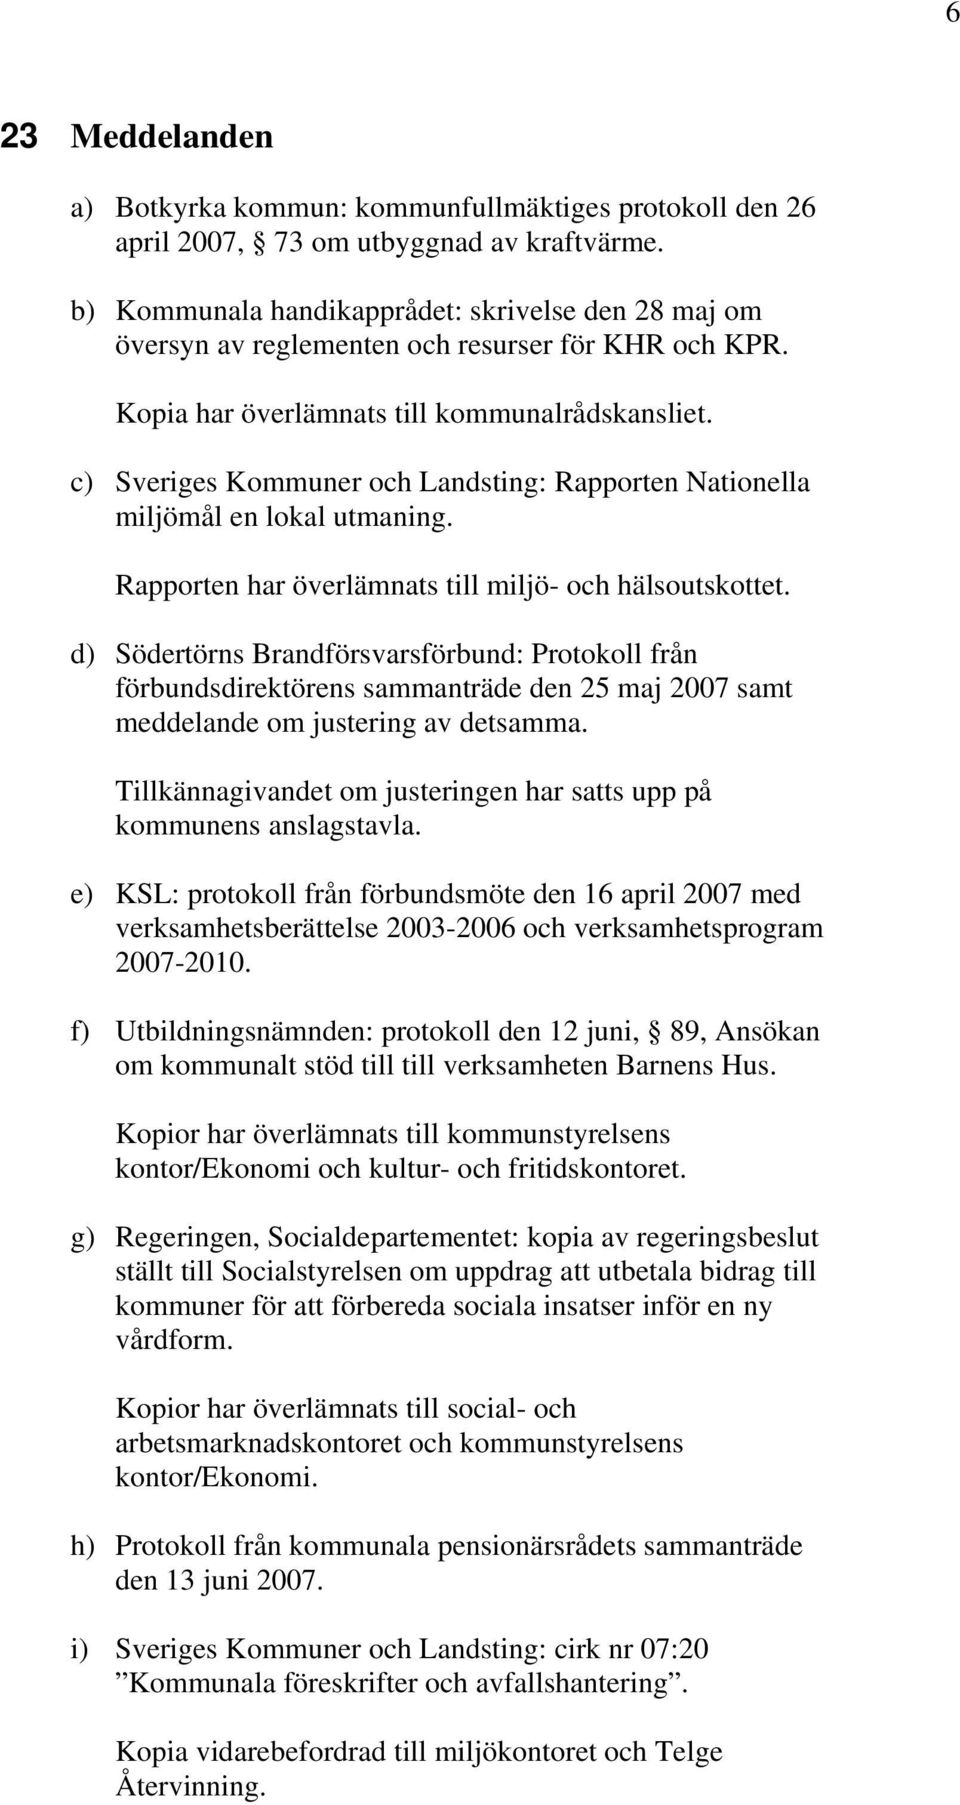 c) Sveriges Kommuner och Landsting: Rapporten Nationella miljömål en lokal utmaning. Rapporten har överlämnats till miljö- och hälsoutskottet.